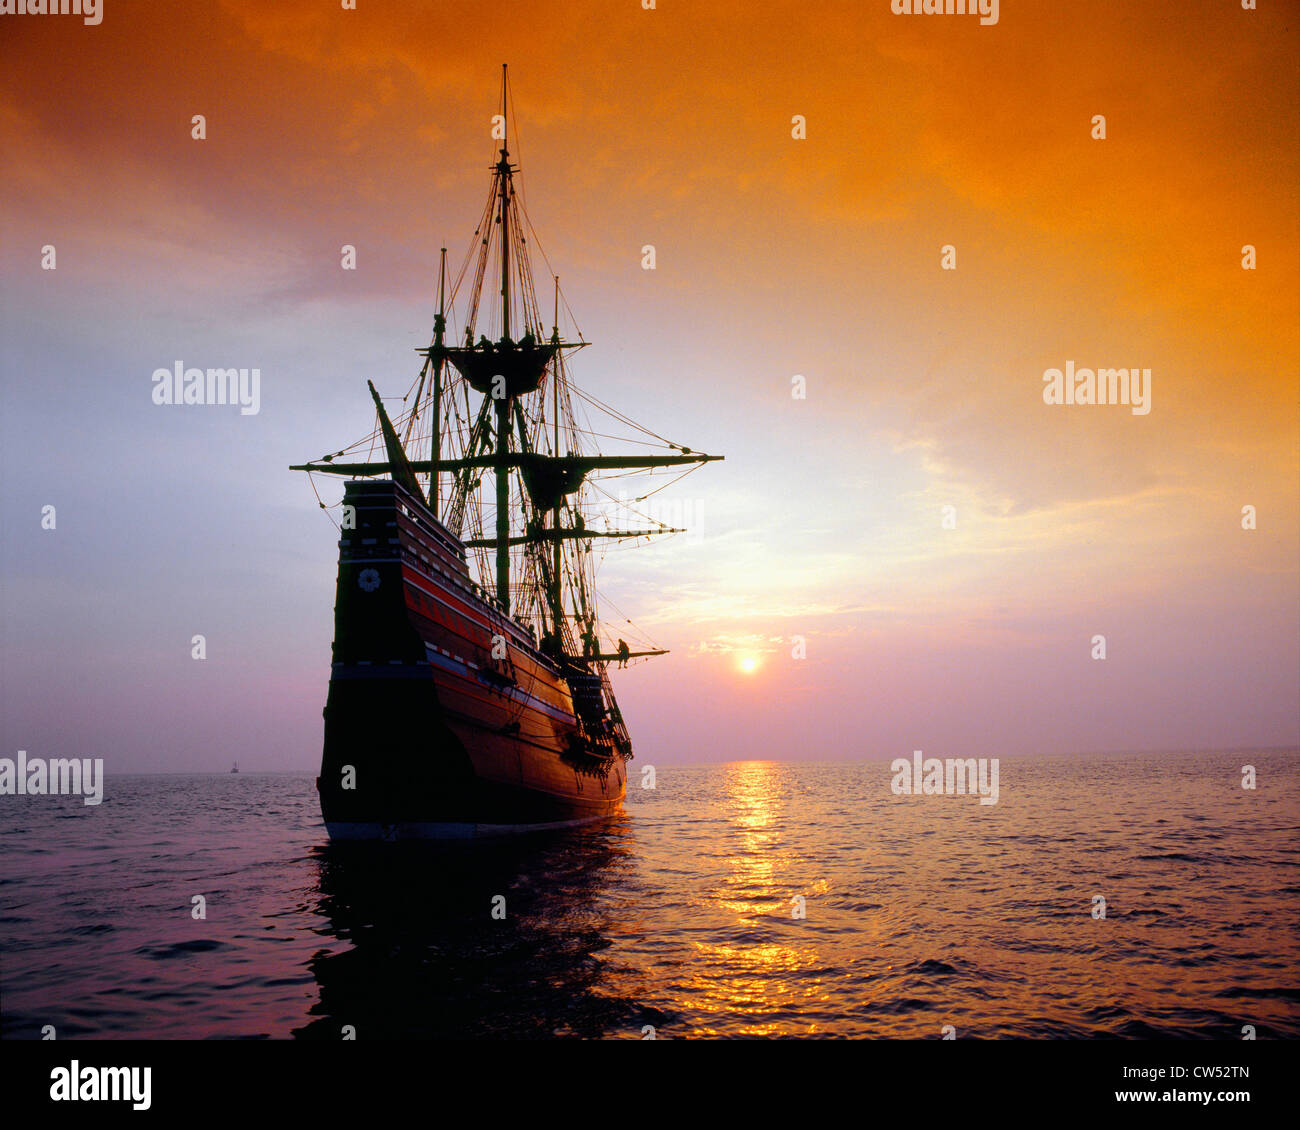 Mayflower II replica at sunset, Massachusetts Stock Photo